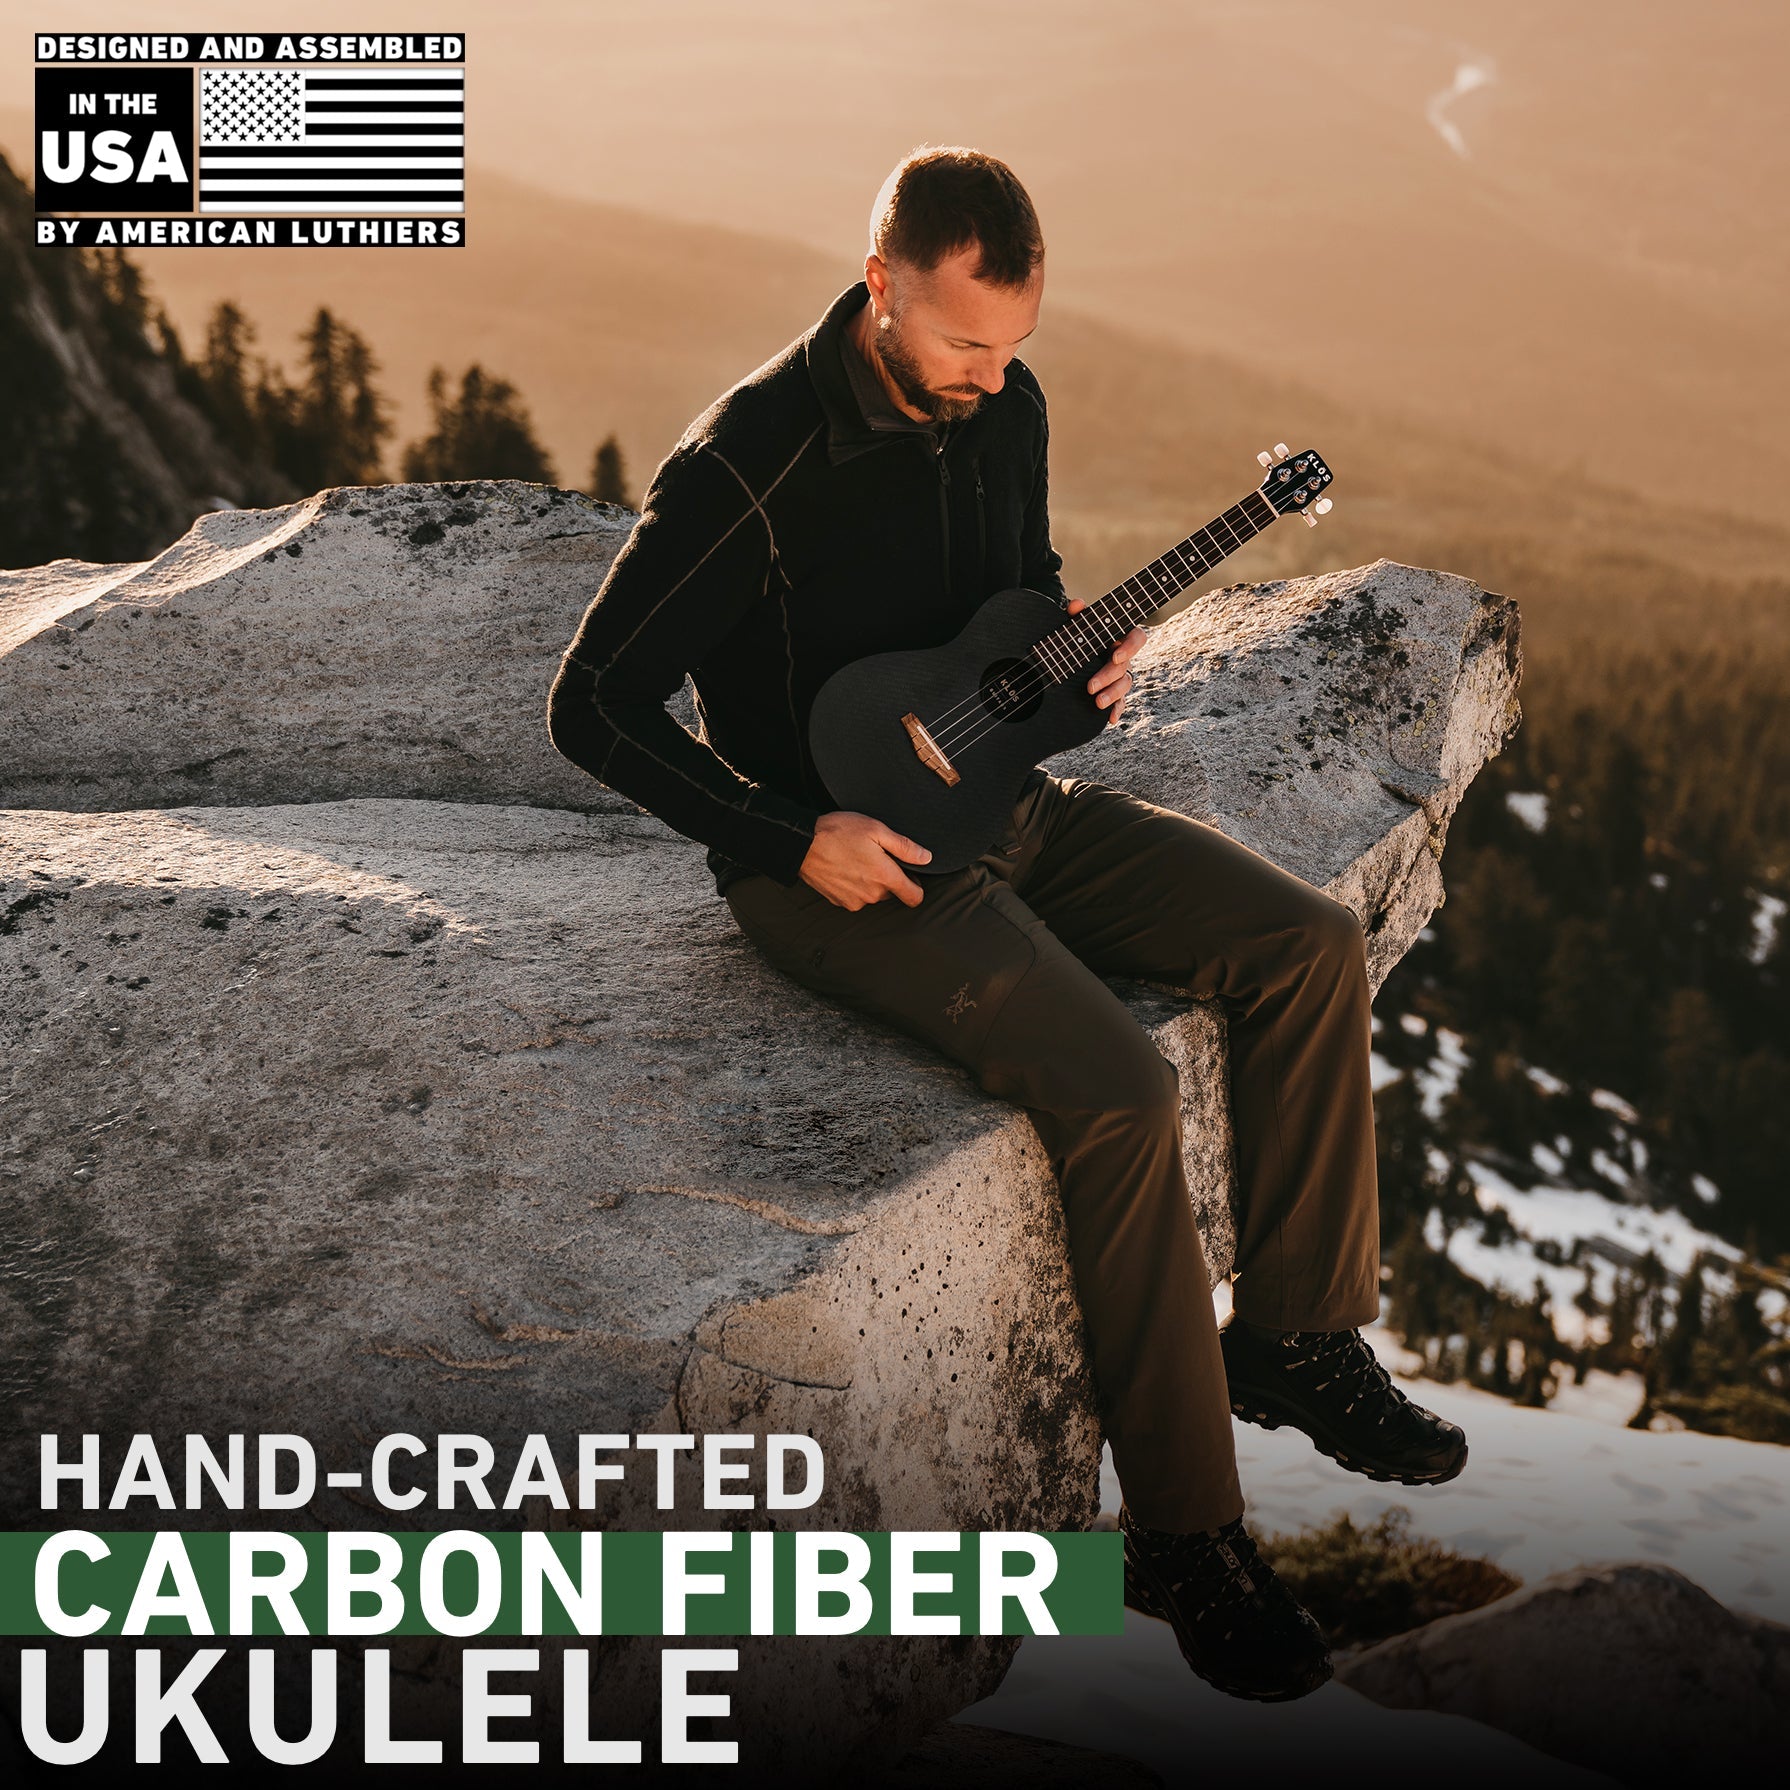 Hand-crafted carbon fiber ukulele 